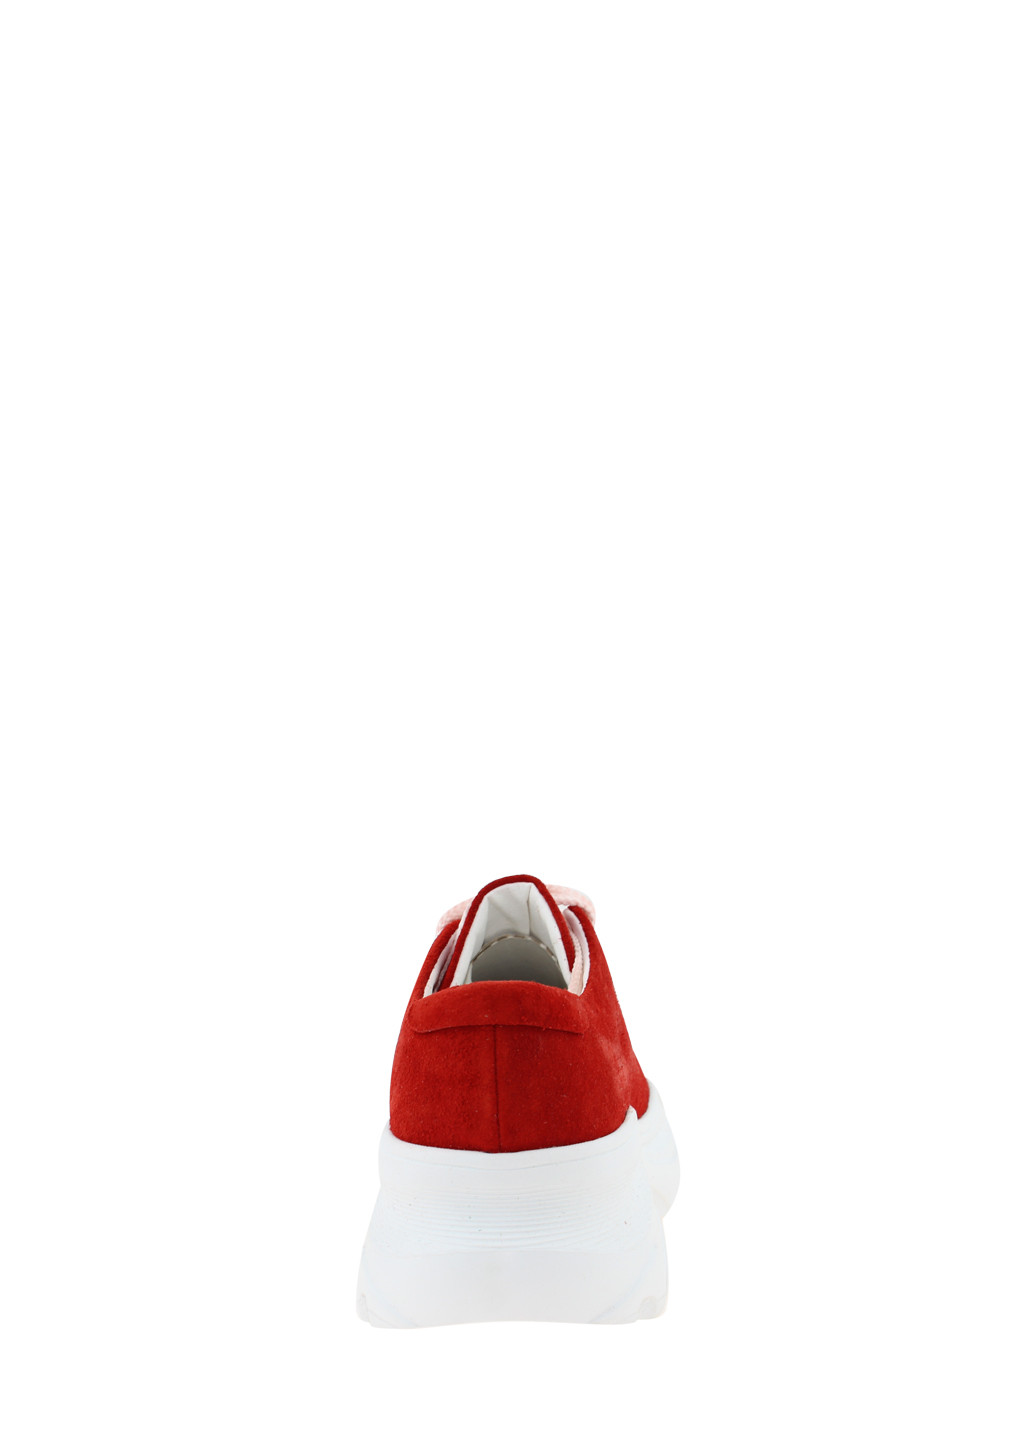 Червоні осінні кросівки biz20-00135 червоний Bizoni